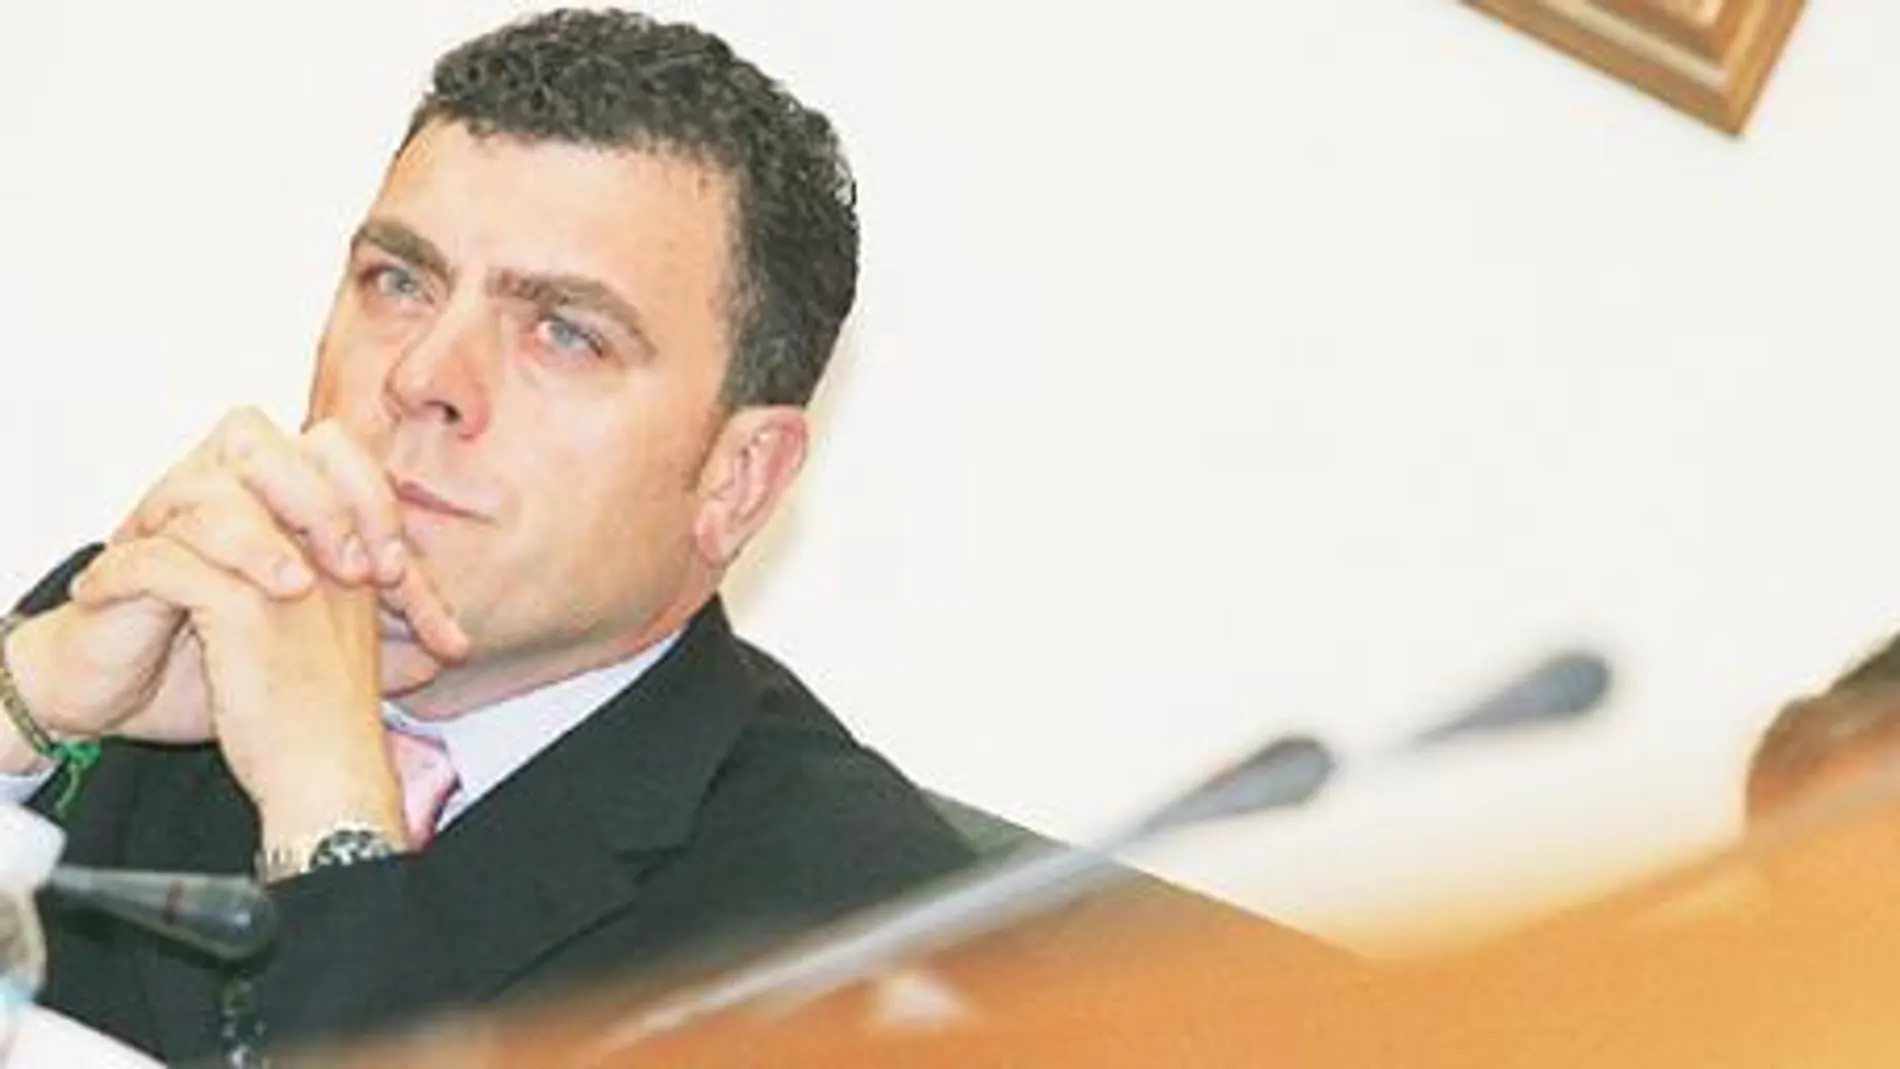 El alcalde de Leganés adjudica varios contratos a empresas ficticias